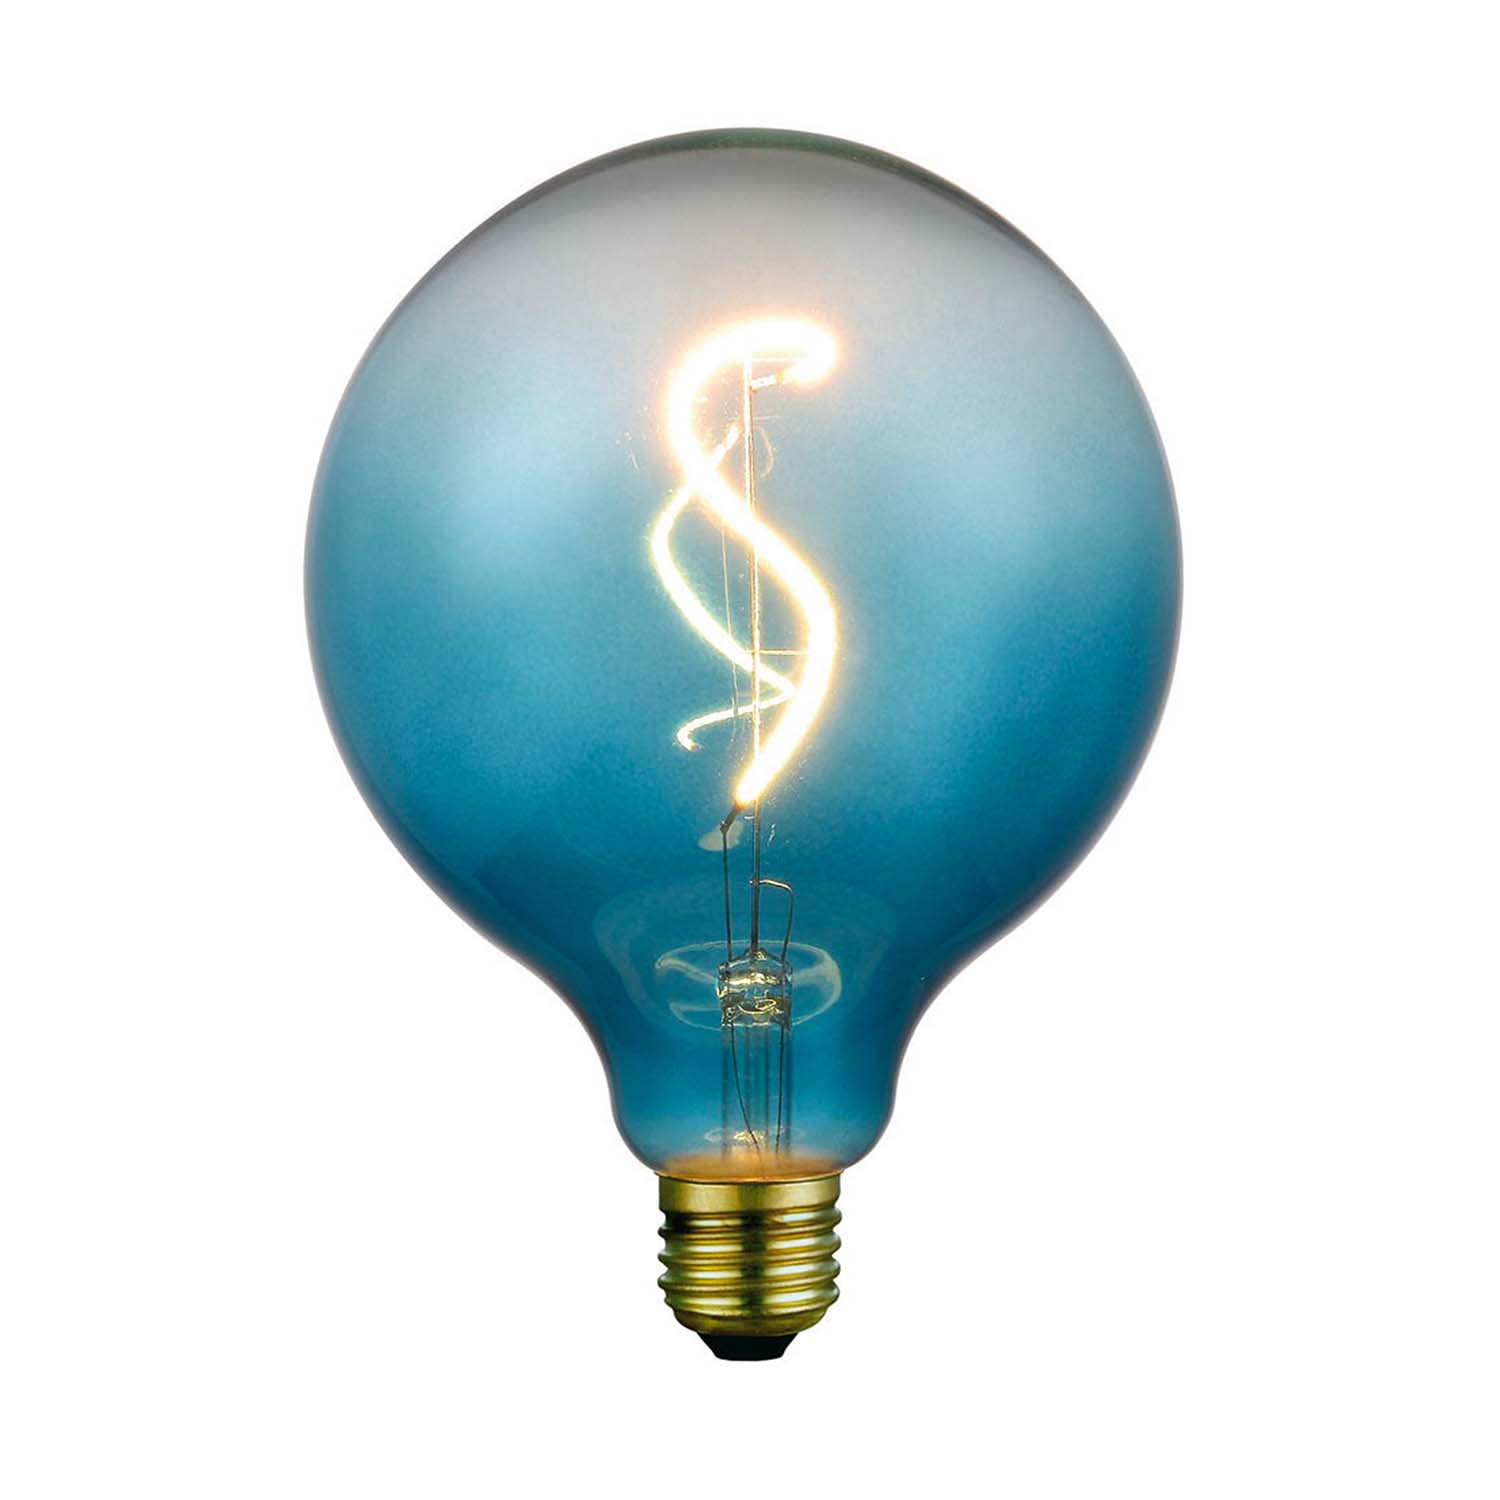 Weich – E27-LED-Glühbirne mit buntem Farbverlaufsdesign